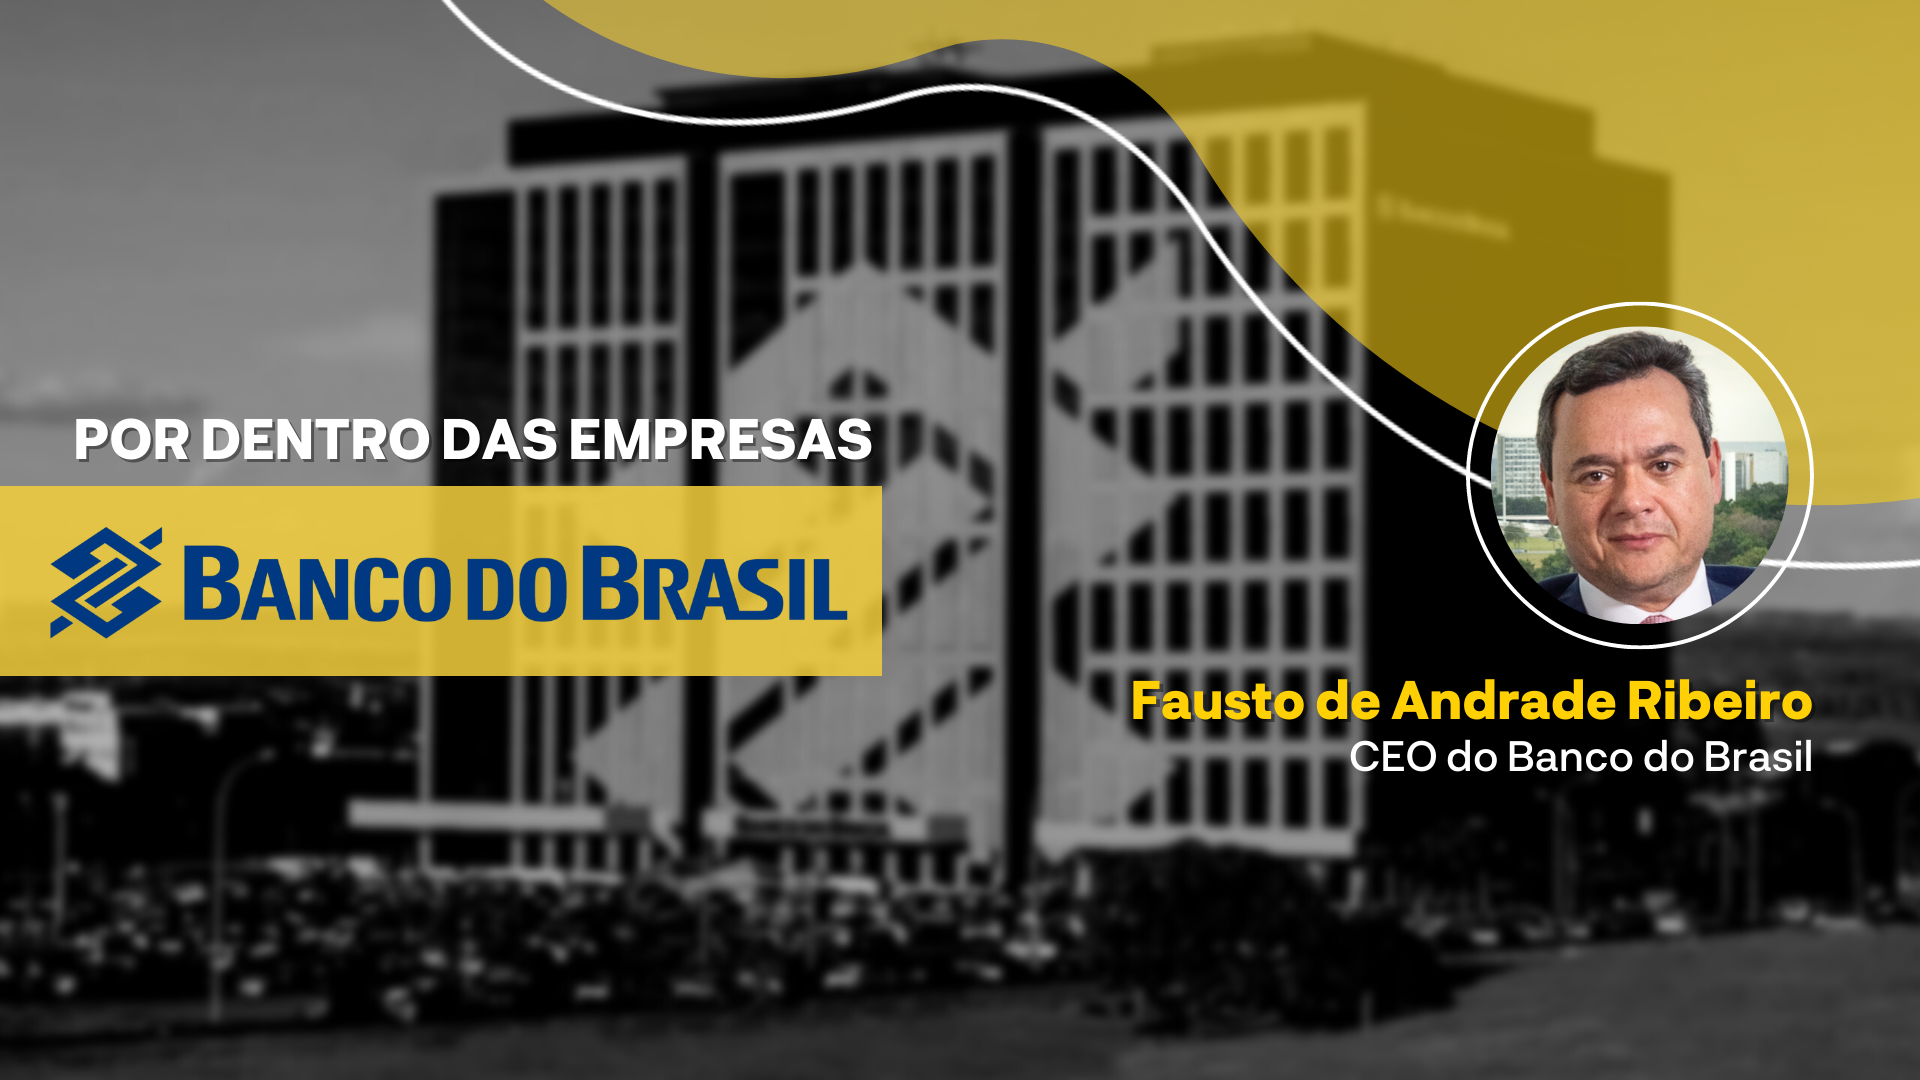 Fausto Ribeiro, CEO do Banco do Brasil, fala sobre os planos do banco